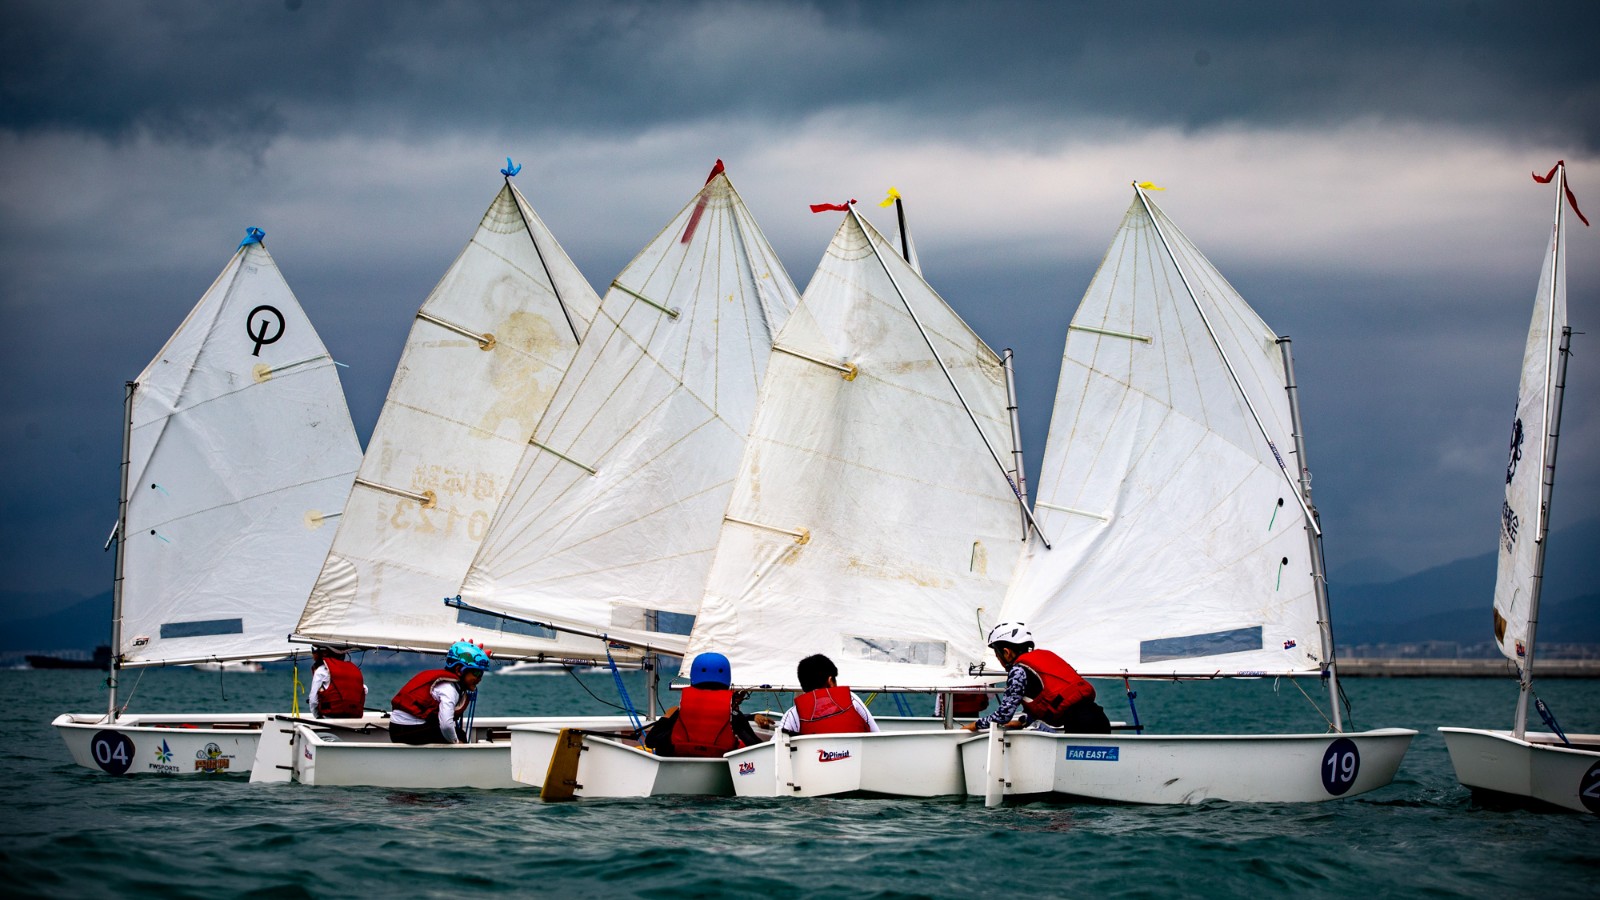 20190309czf第十届环海南岛国际帆船赛（三亚）-7703972.jpg